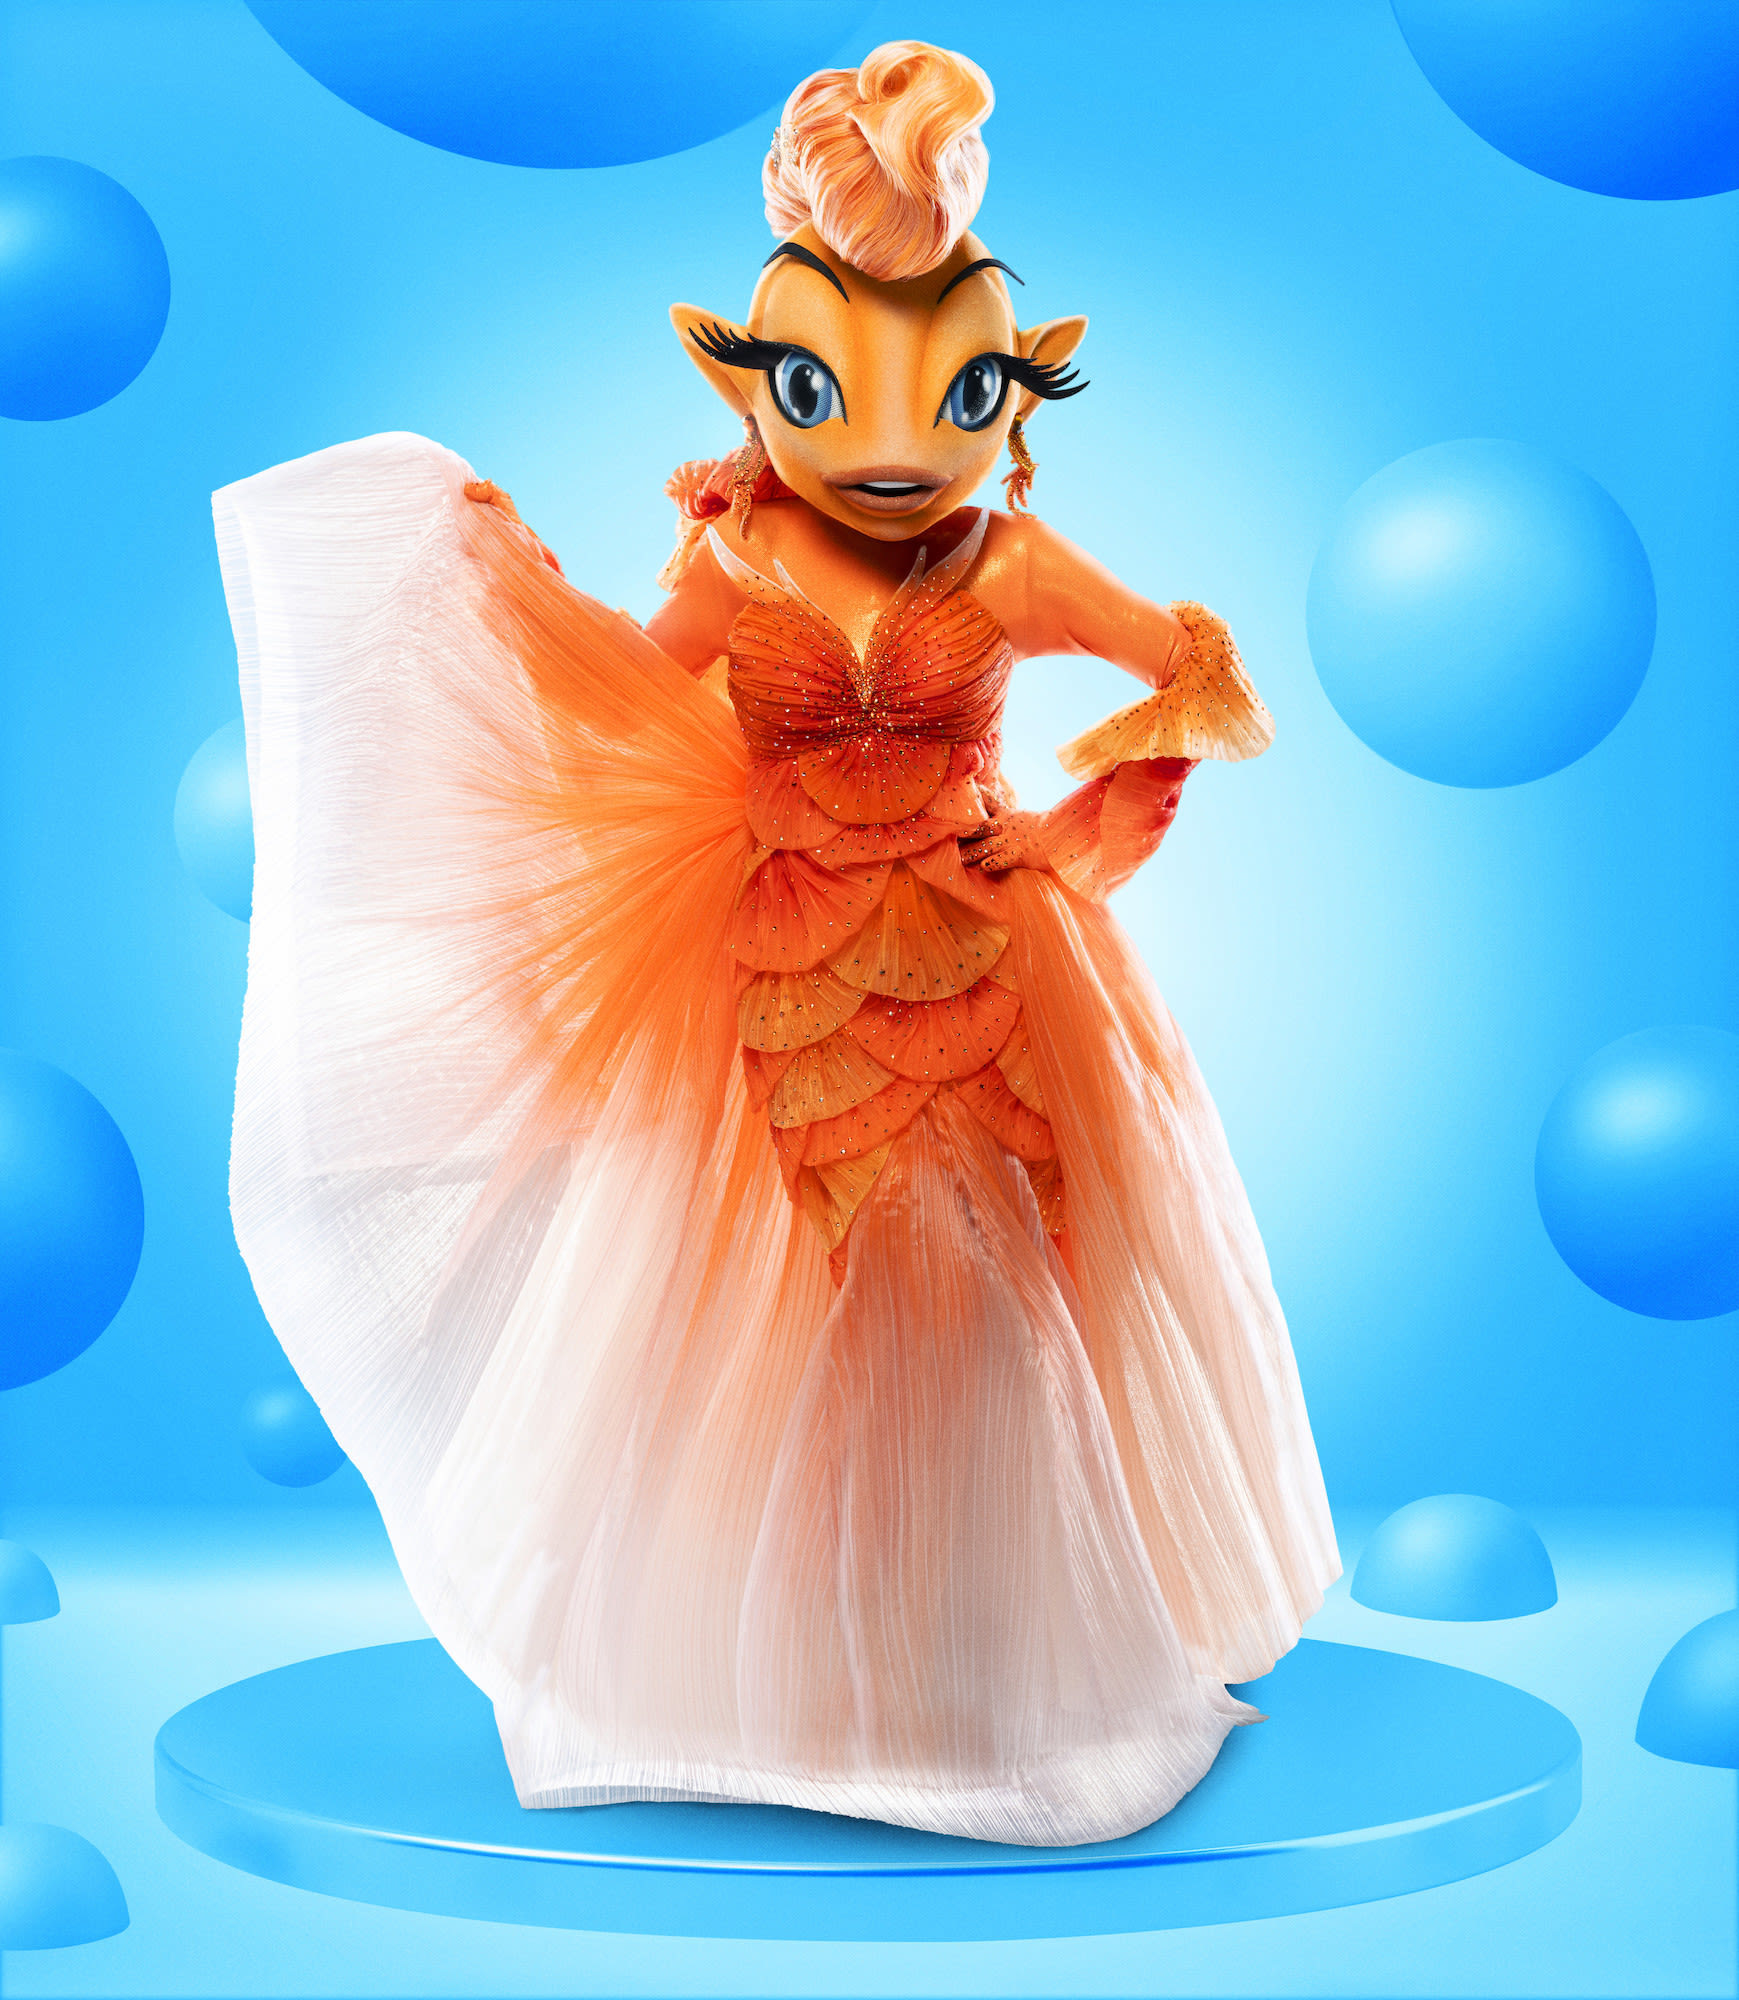 The Masked Singer’s Goldfish Breaks Free as the Winner of Season 11